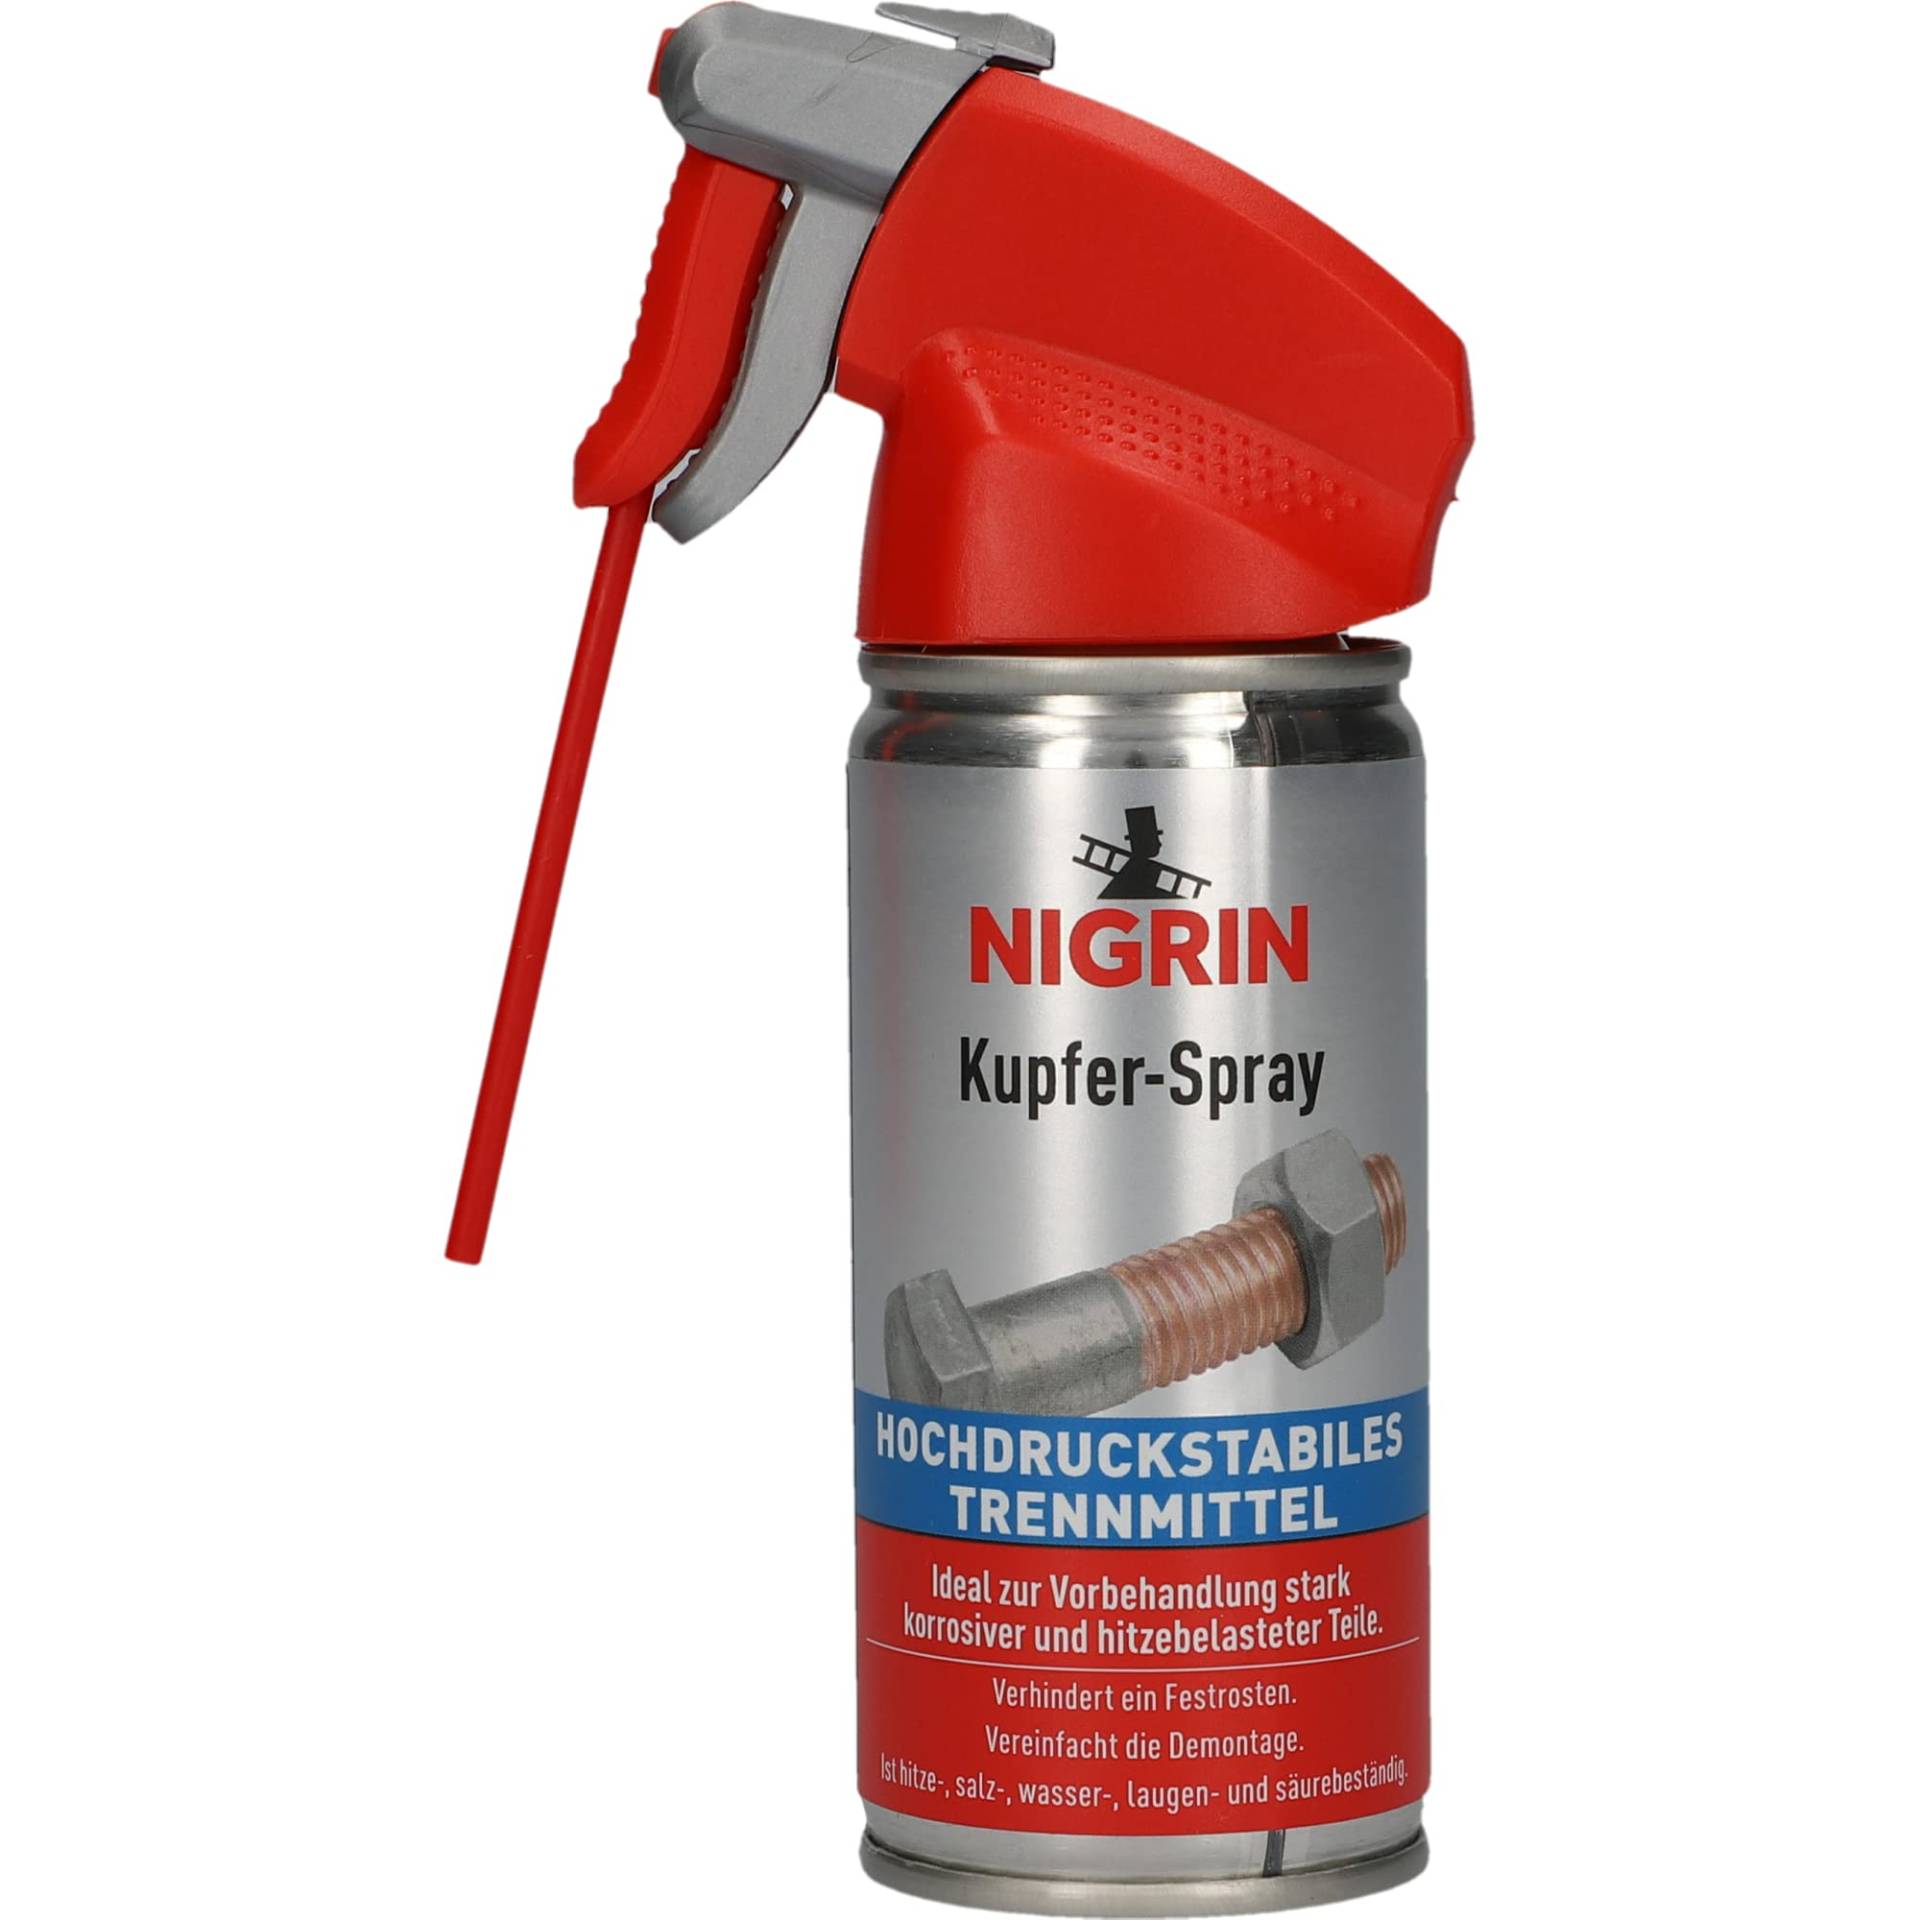 NIGRIN Kupfer-Spray, hochdruckstabiles Trennmittel, verhindert Festrosten, hitzebeständig, 100 ml, rot von NIGRIN